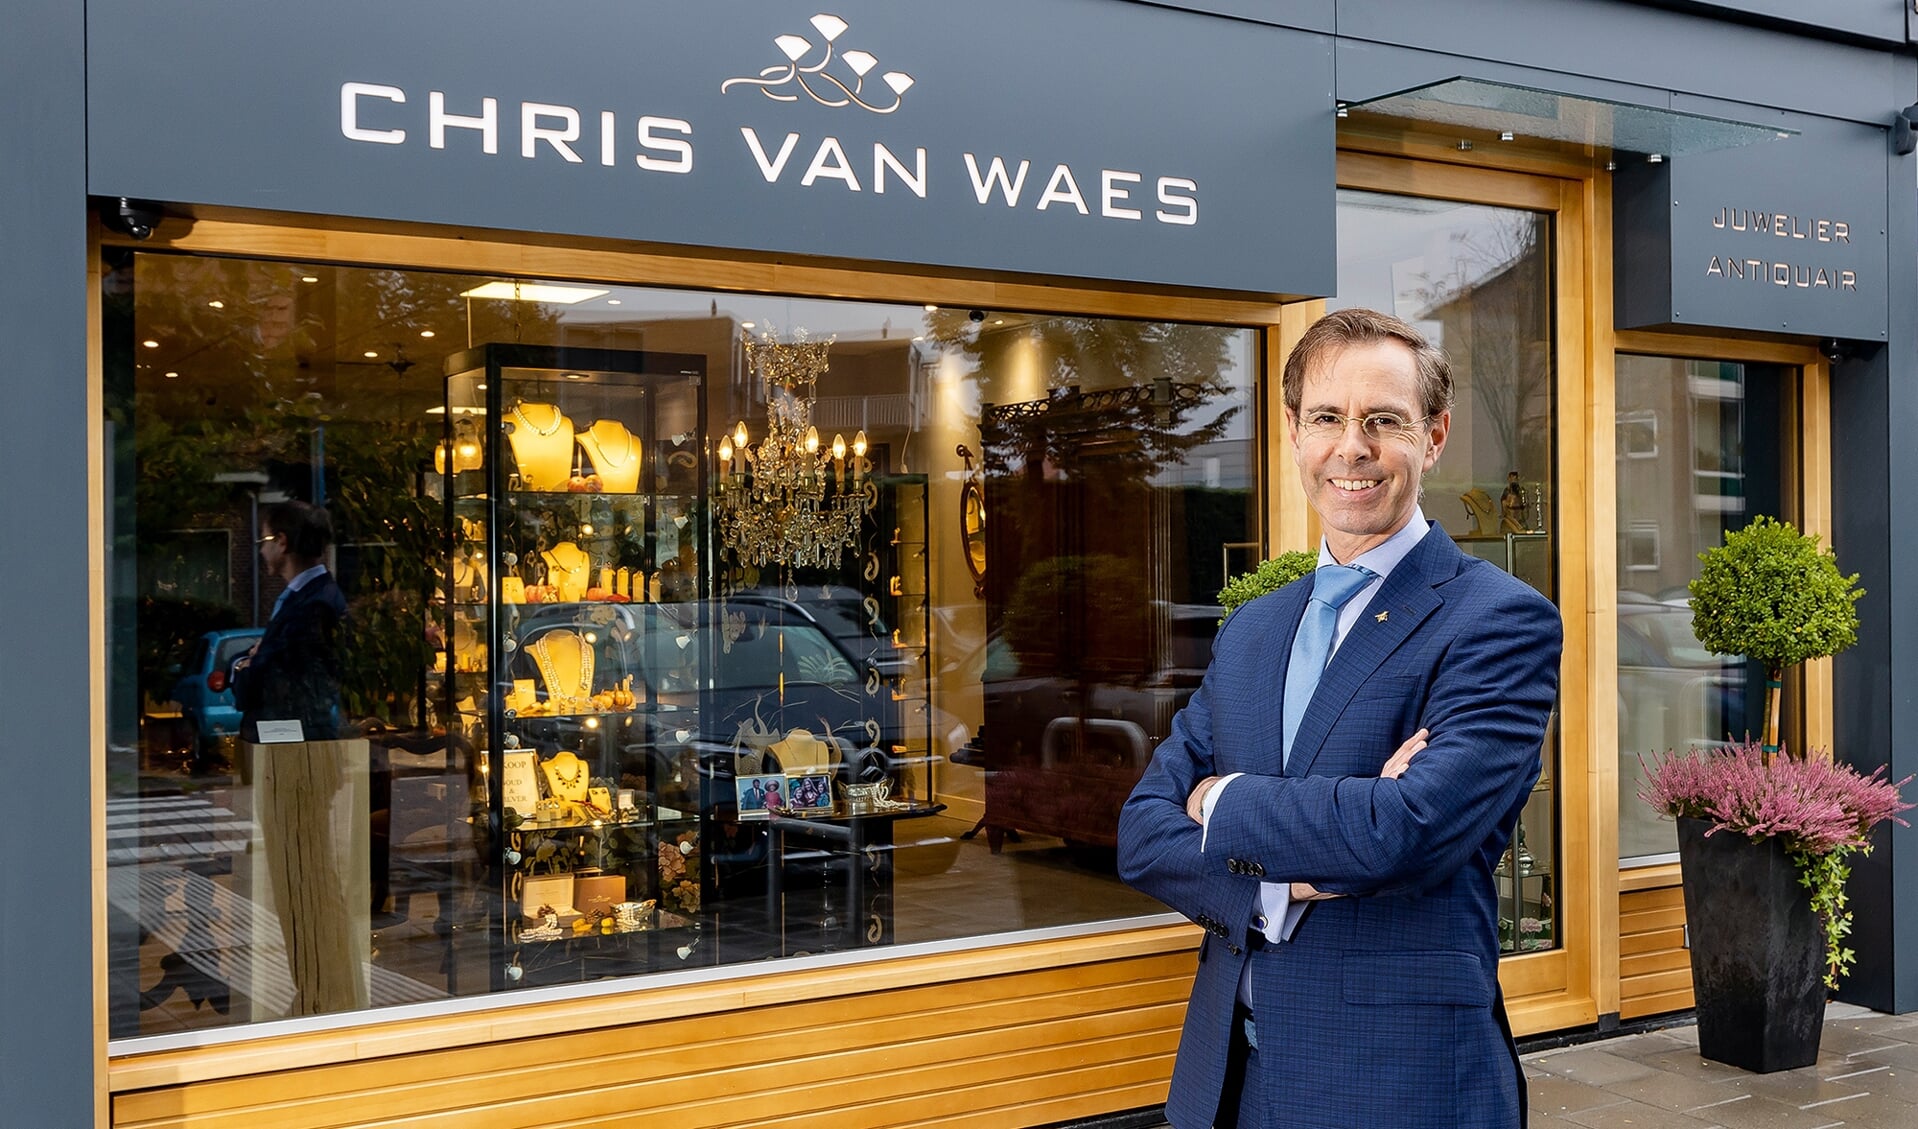 Chris van Waes